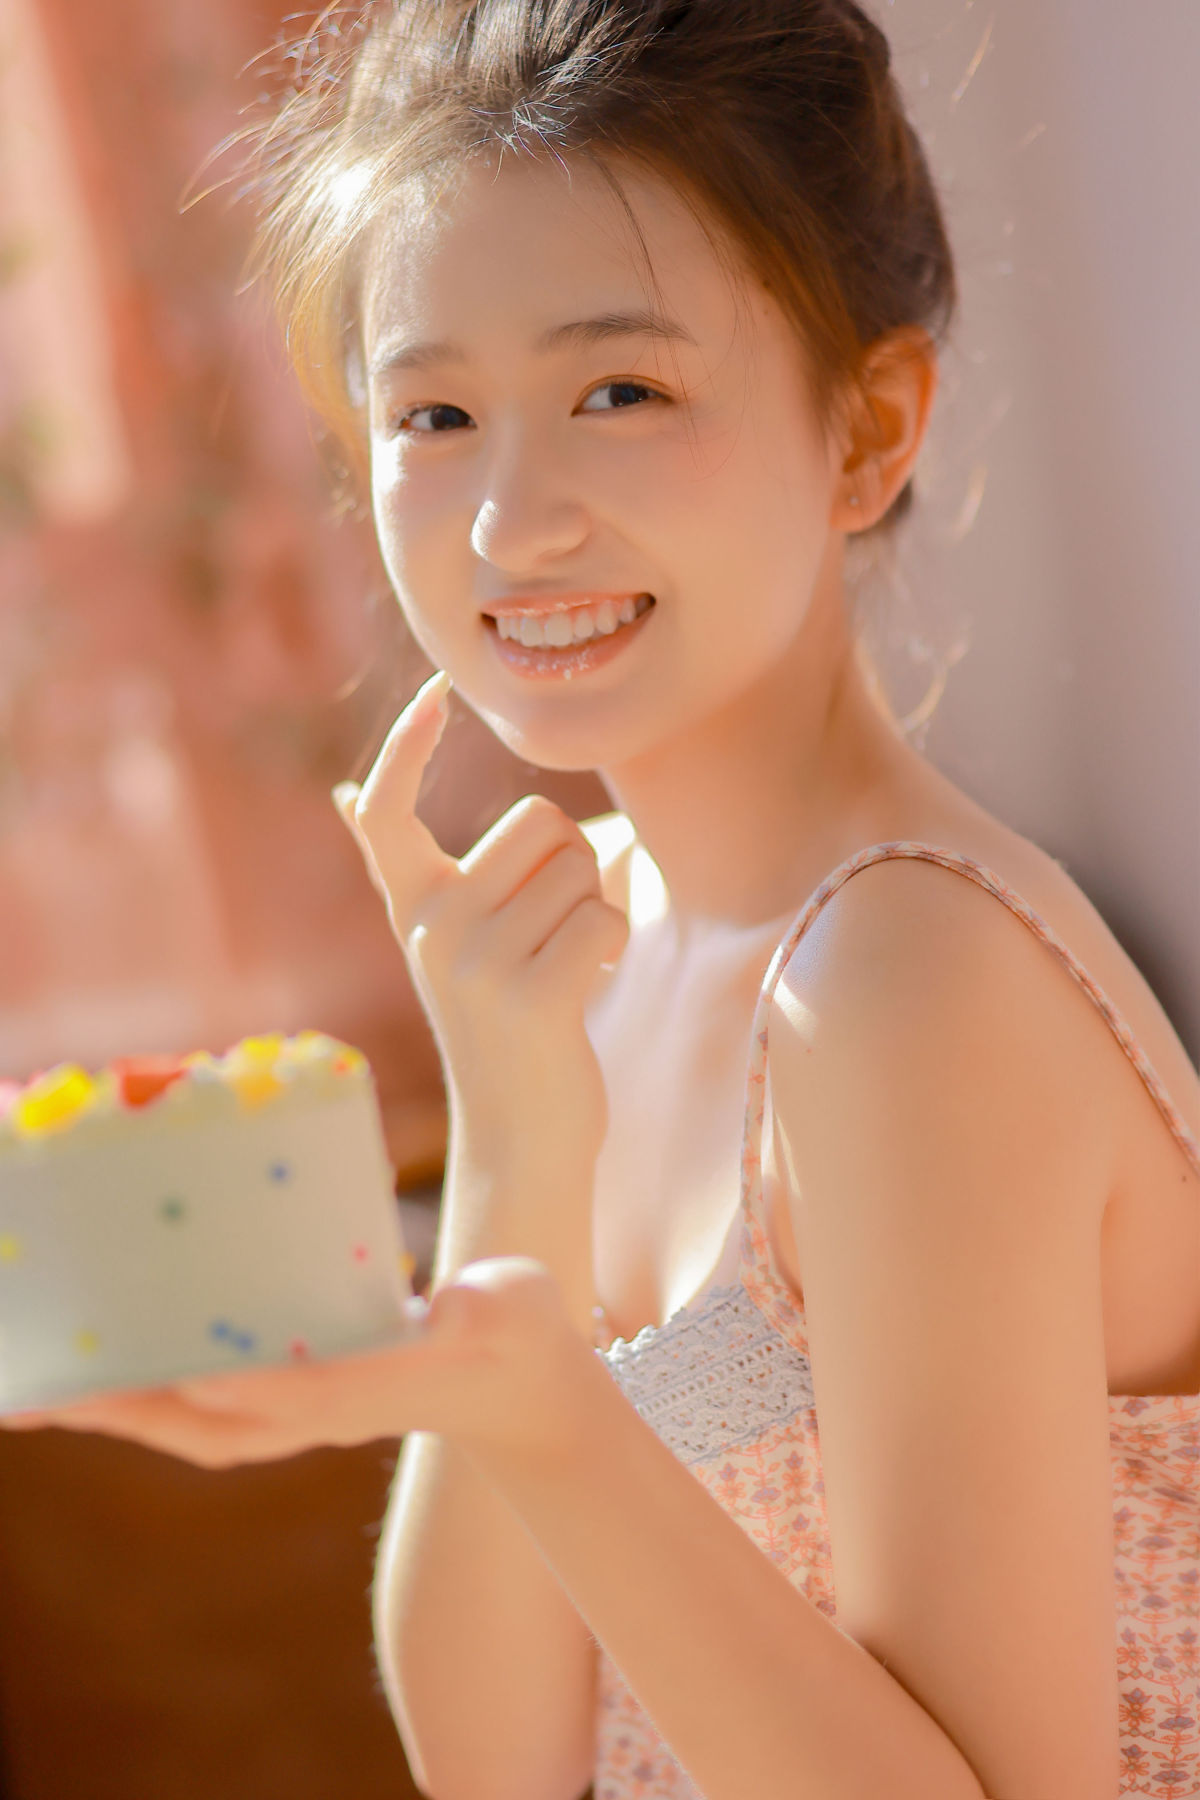 z琼之之之_瑞秋的快乐人生《甜甜的蛋糕》美图作品图片3